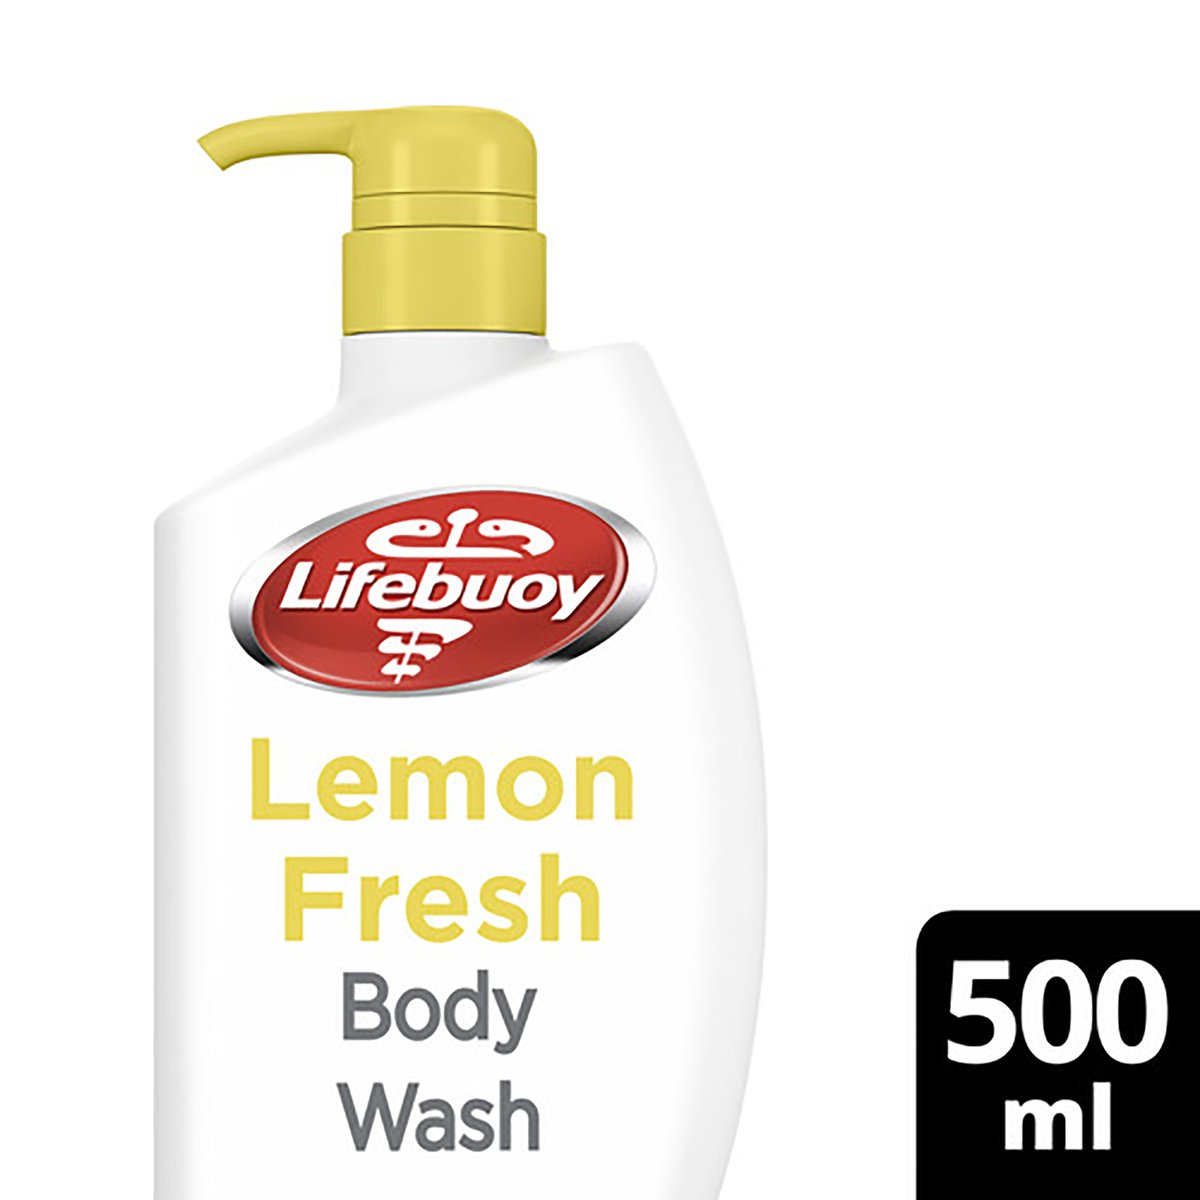 اشتري قم بشراء لايفبوي غسول الجسم المضاد للبكتيريا برائحة الليمون المنعش 500 مل Online at Best Price من الموقع - من لولو هايبر ماركت Shower Gel&Body Wash في السعودية